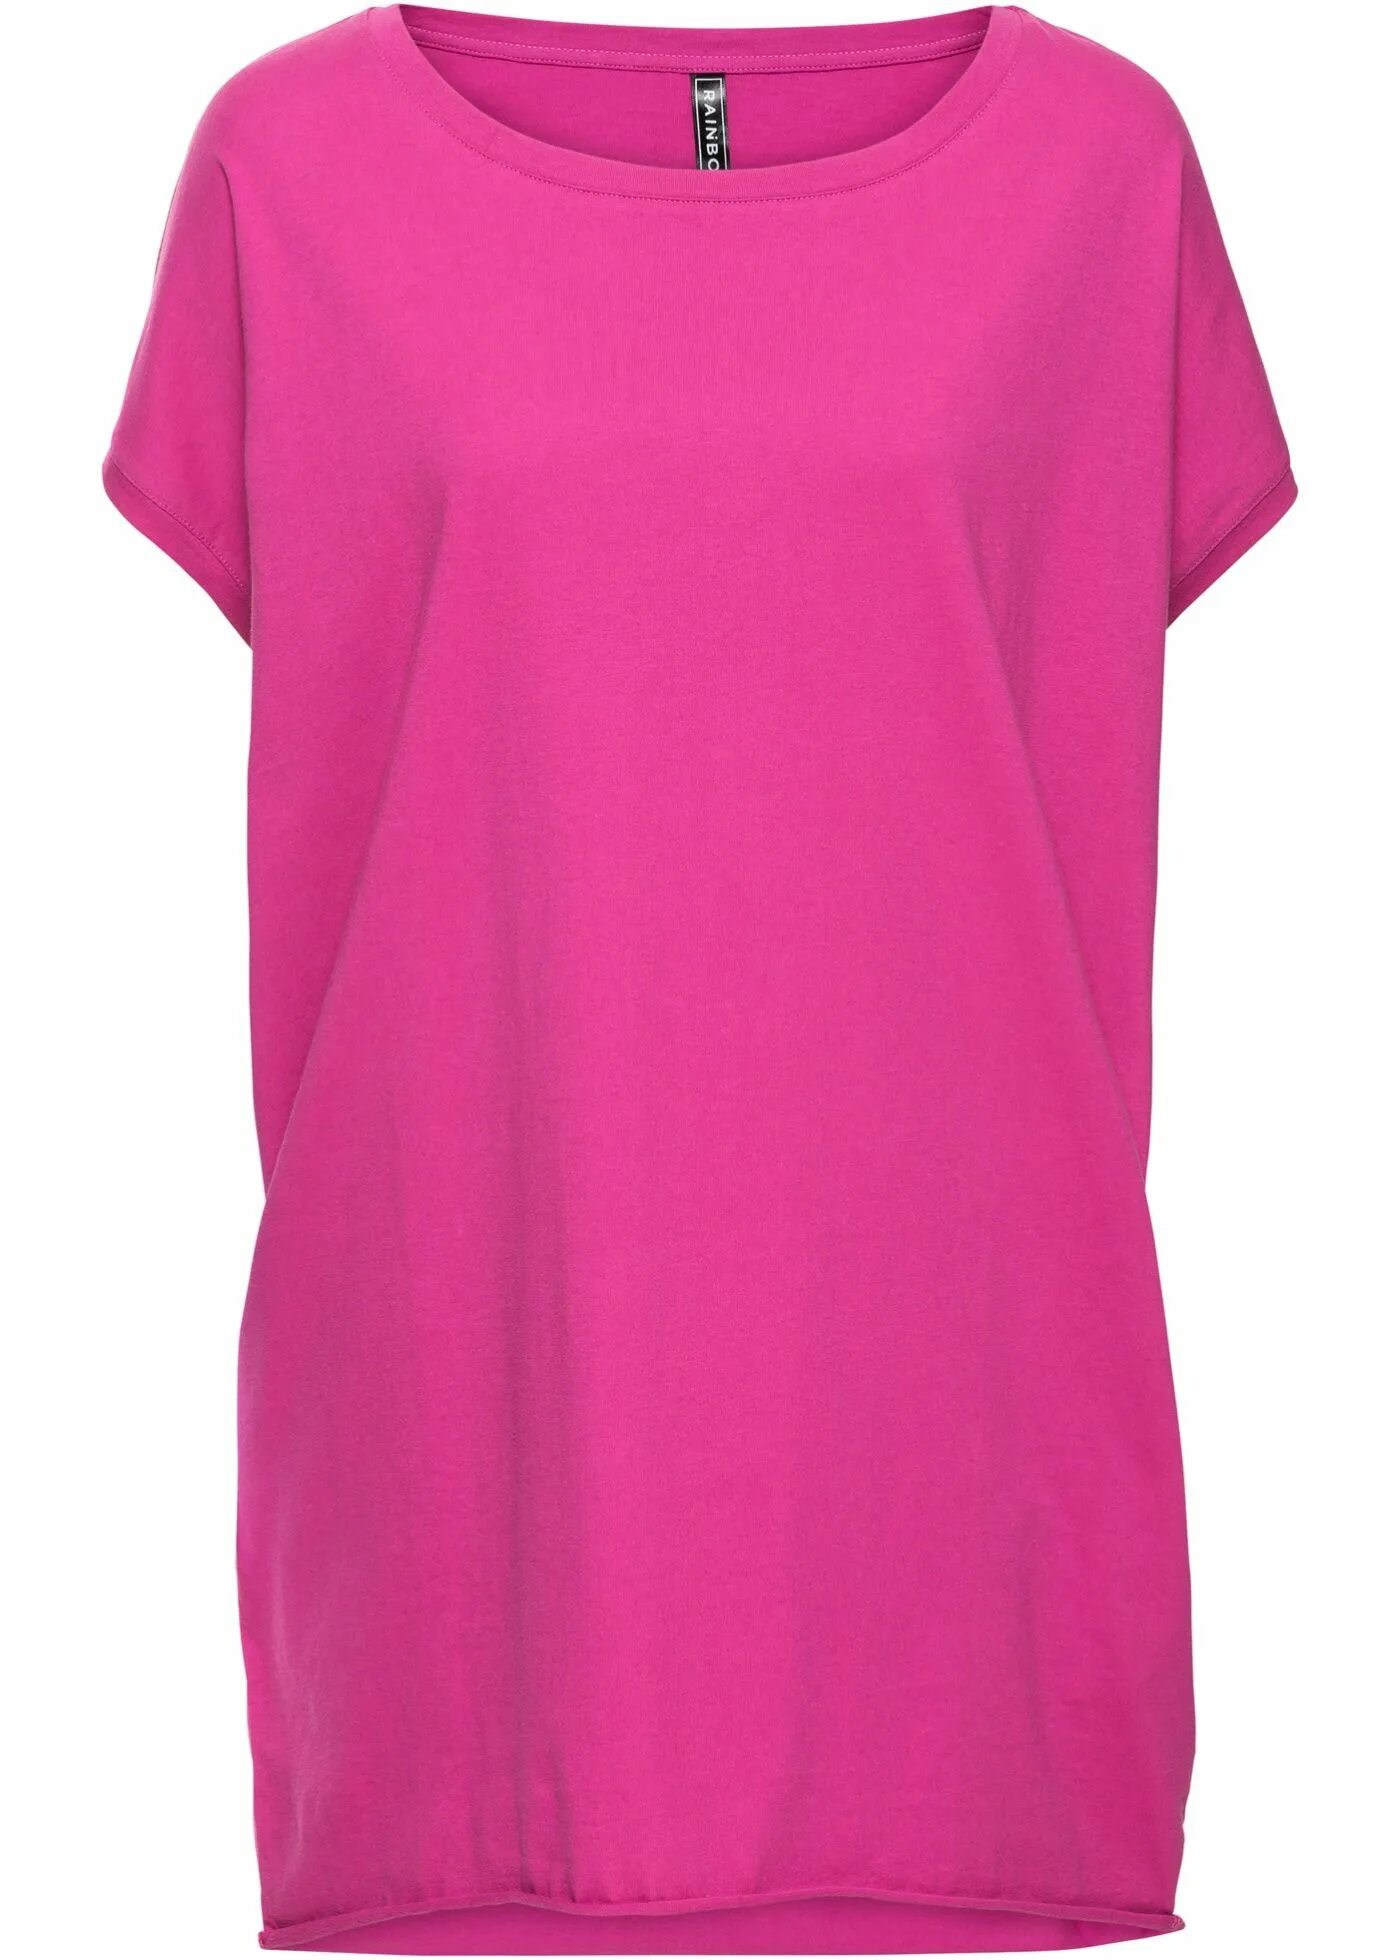 Футболка длинная Бонпри. Bonprix удлиненная футболка. Розовая футболка длинная. Удлиненная футболка женская.